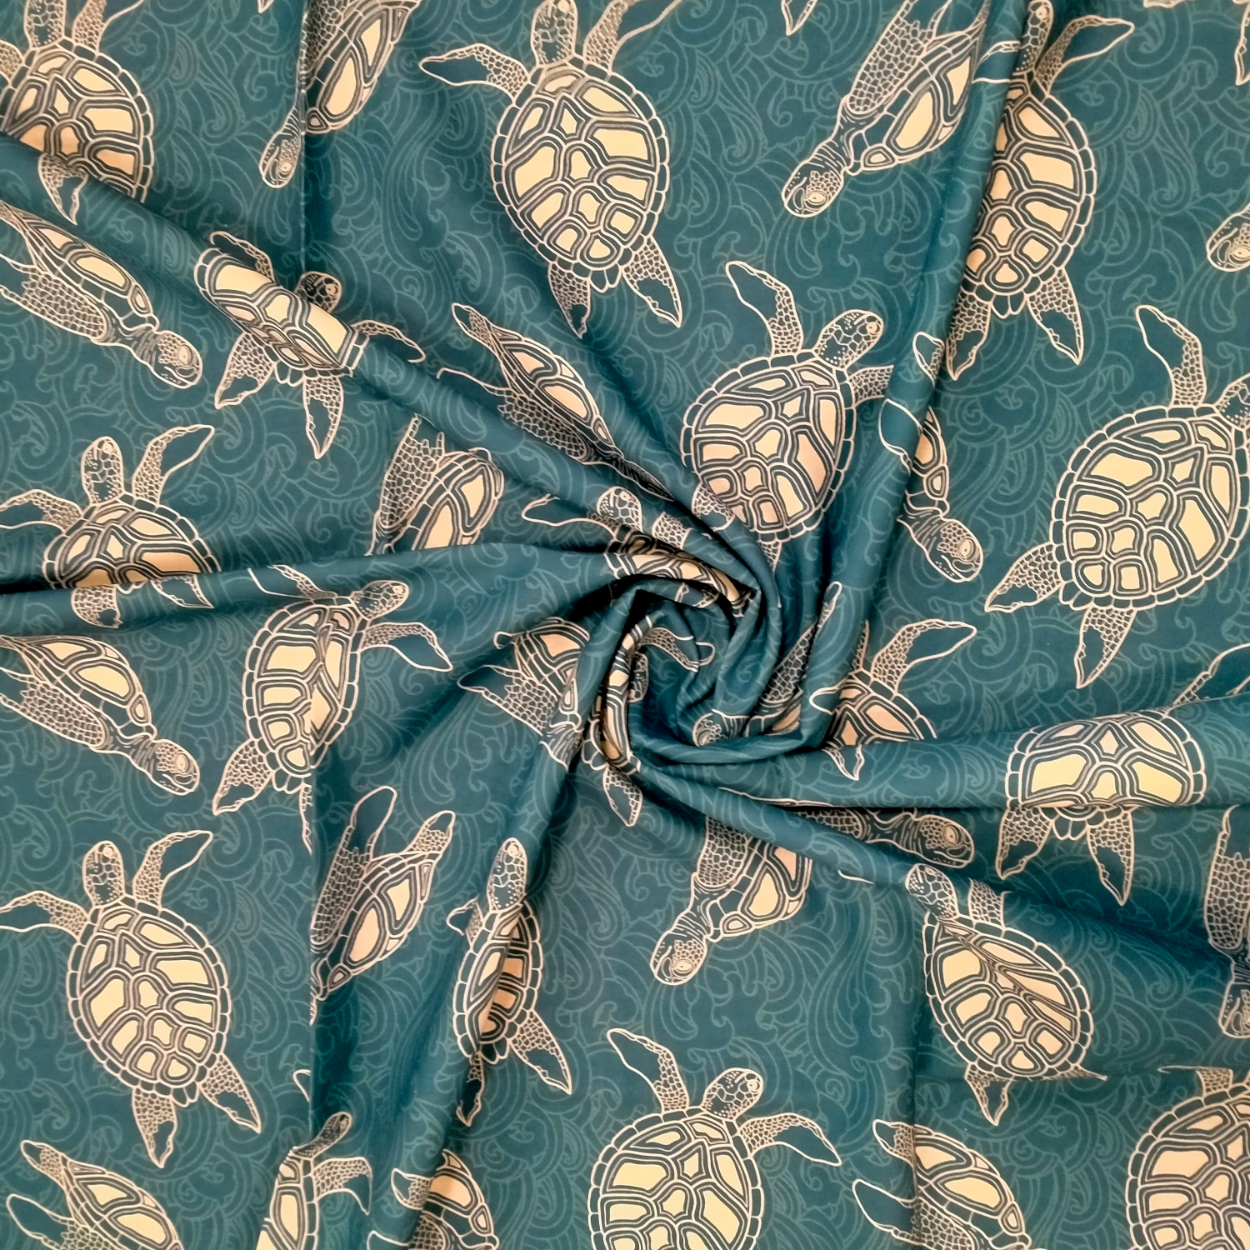 Tessuto stoffa cucito vendita al metro altezza cm 280 cotone Oceano Tartaruga